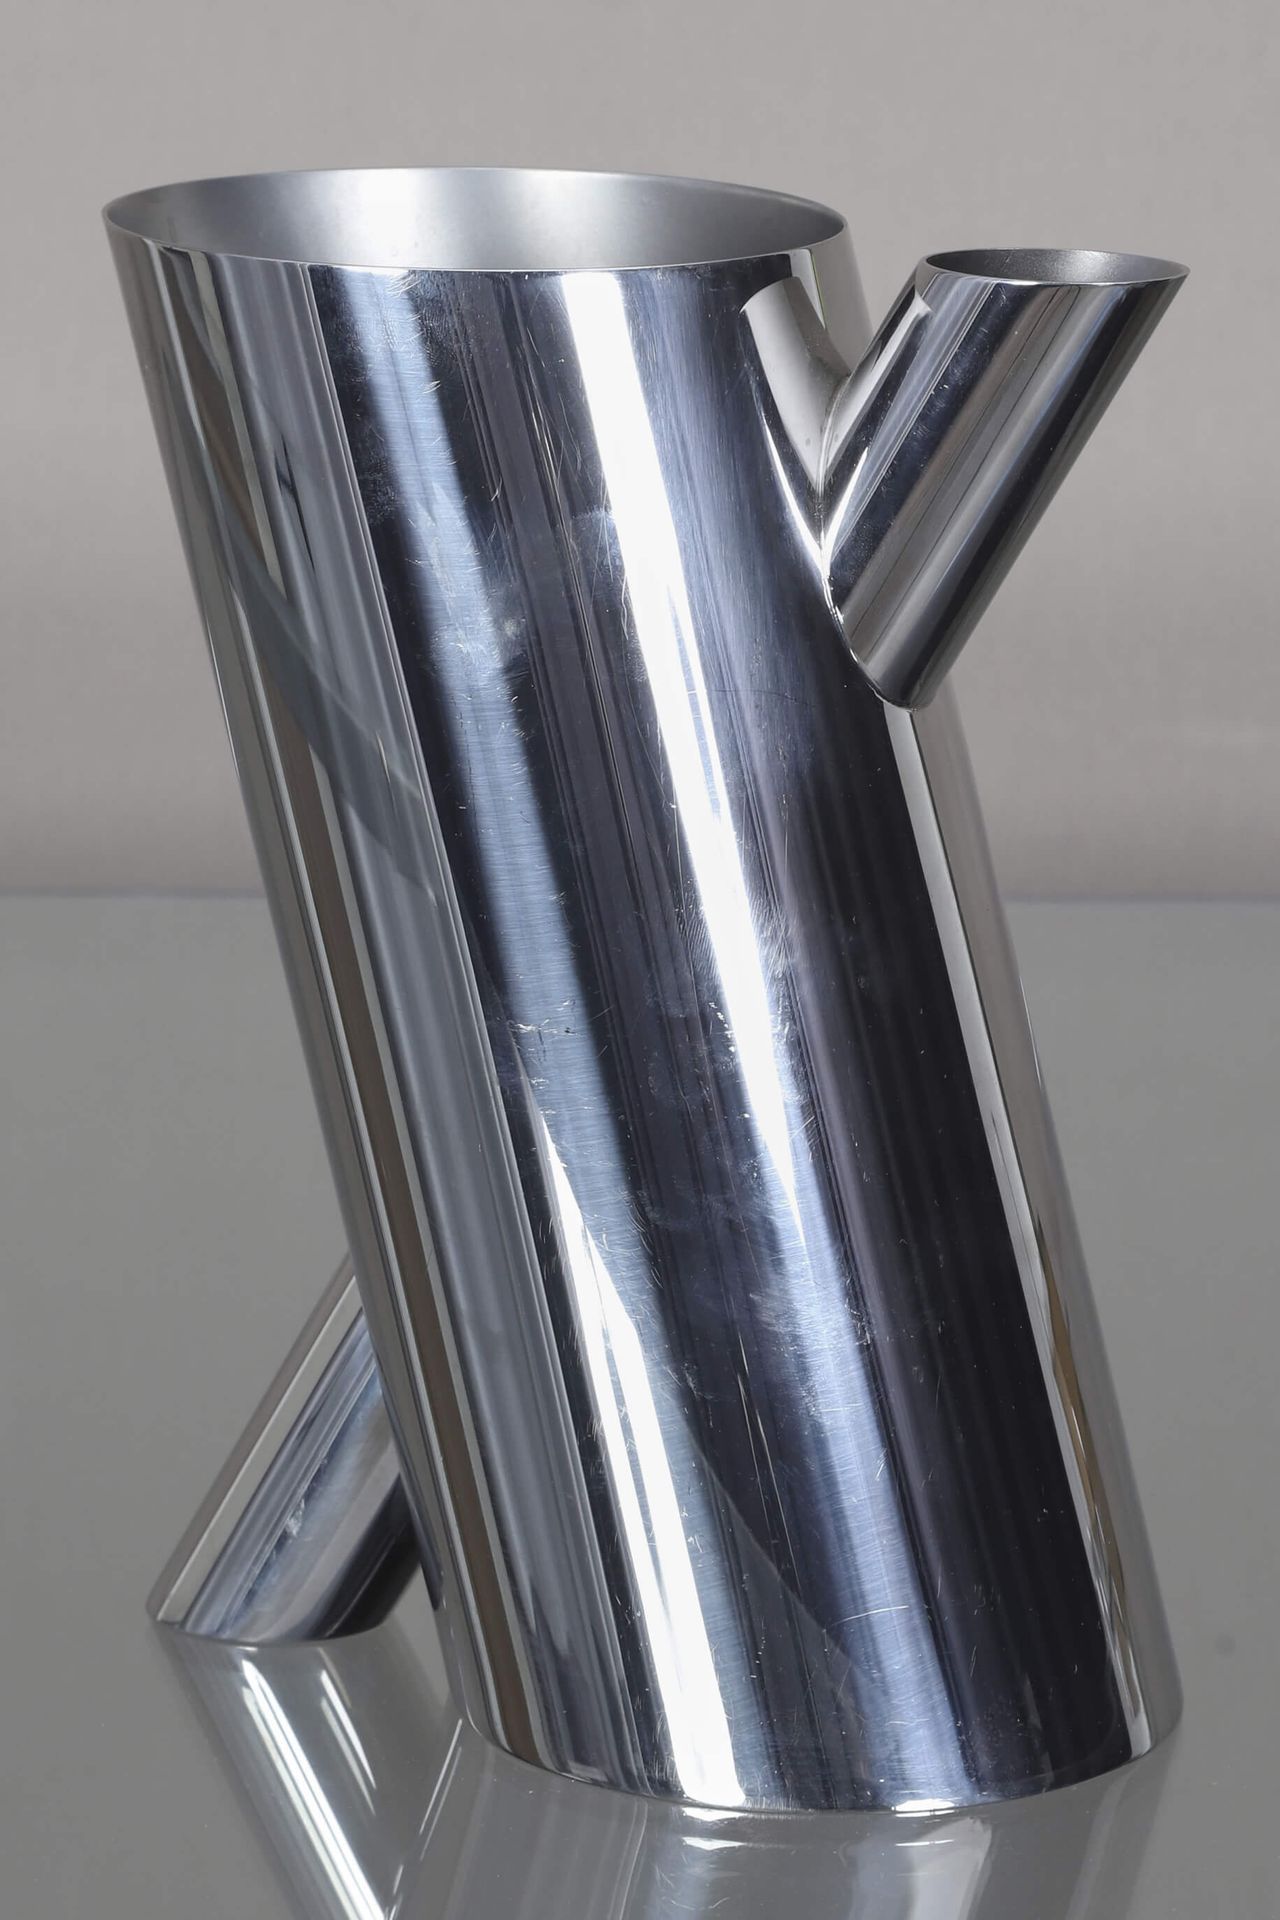 Mario Botta (né en 1943) pour Alessi Tronco花瓶 镀银金属
模型创作于2002年
底座下有出版商标记，高28.5厘米 &hellip;